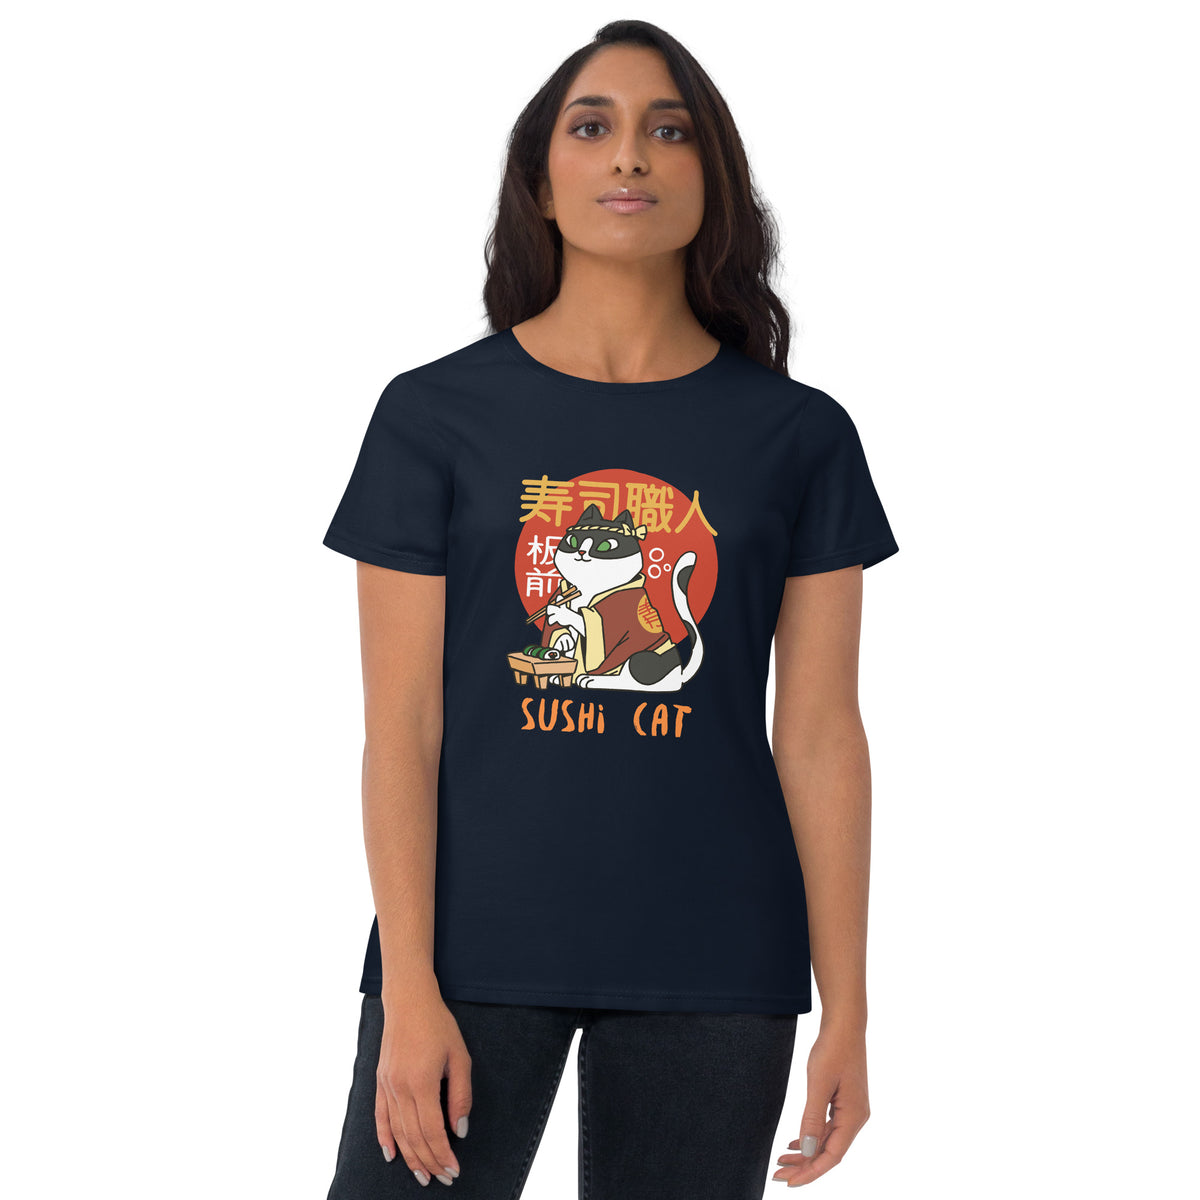 Sushi Cat Women's Short Sleeve T-Shirt